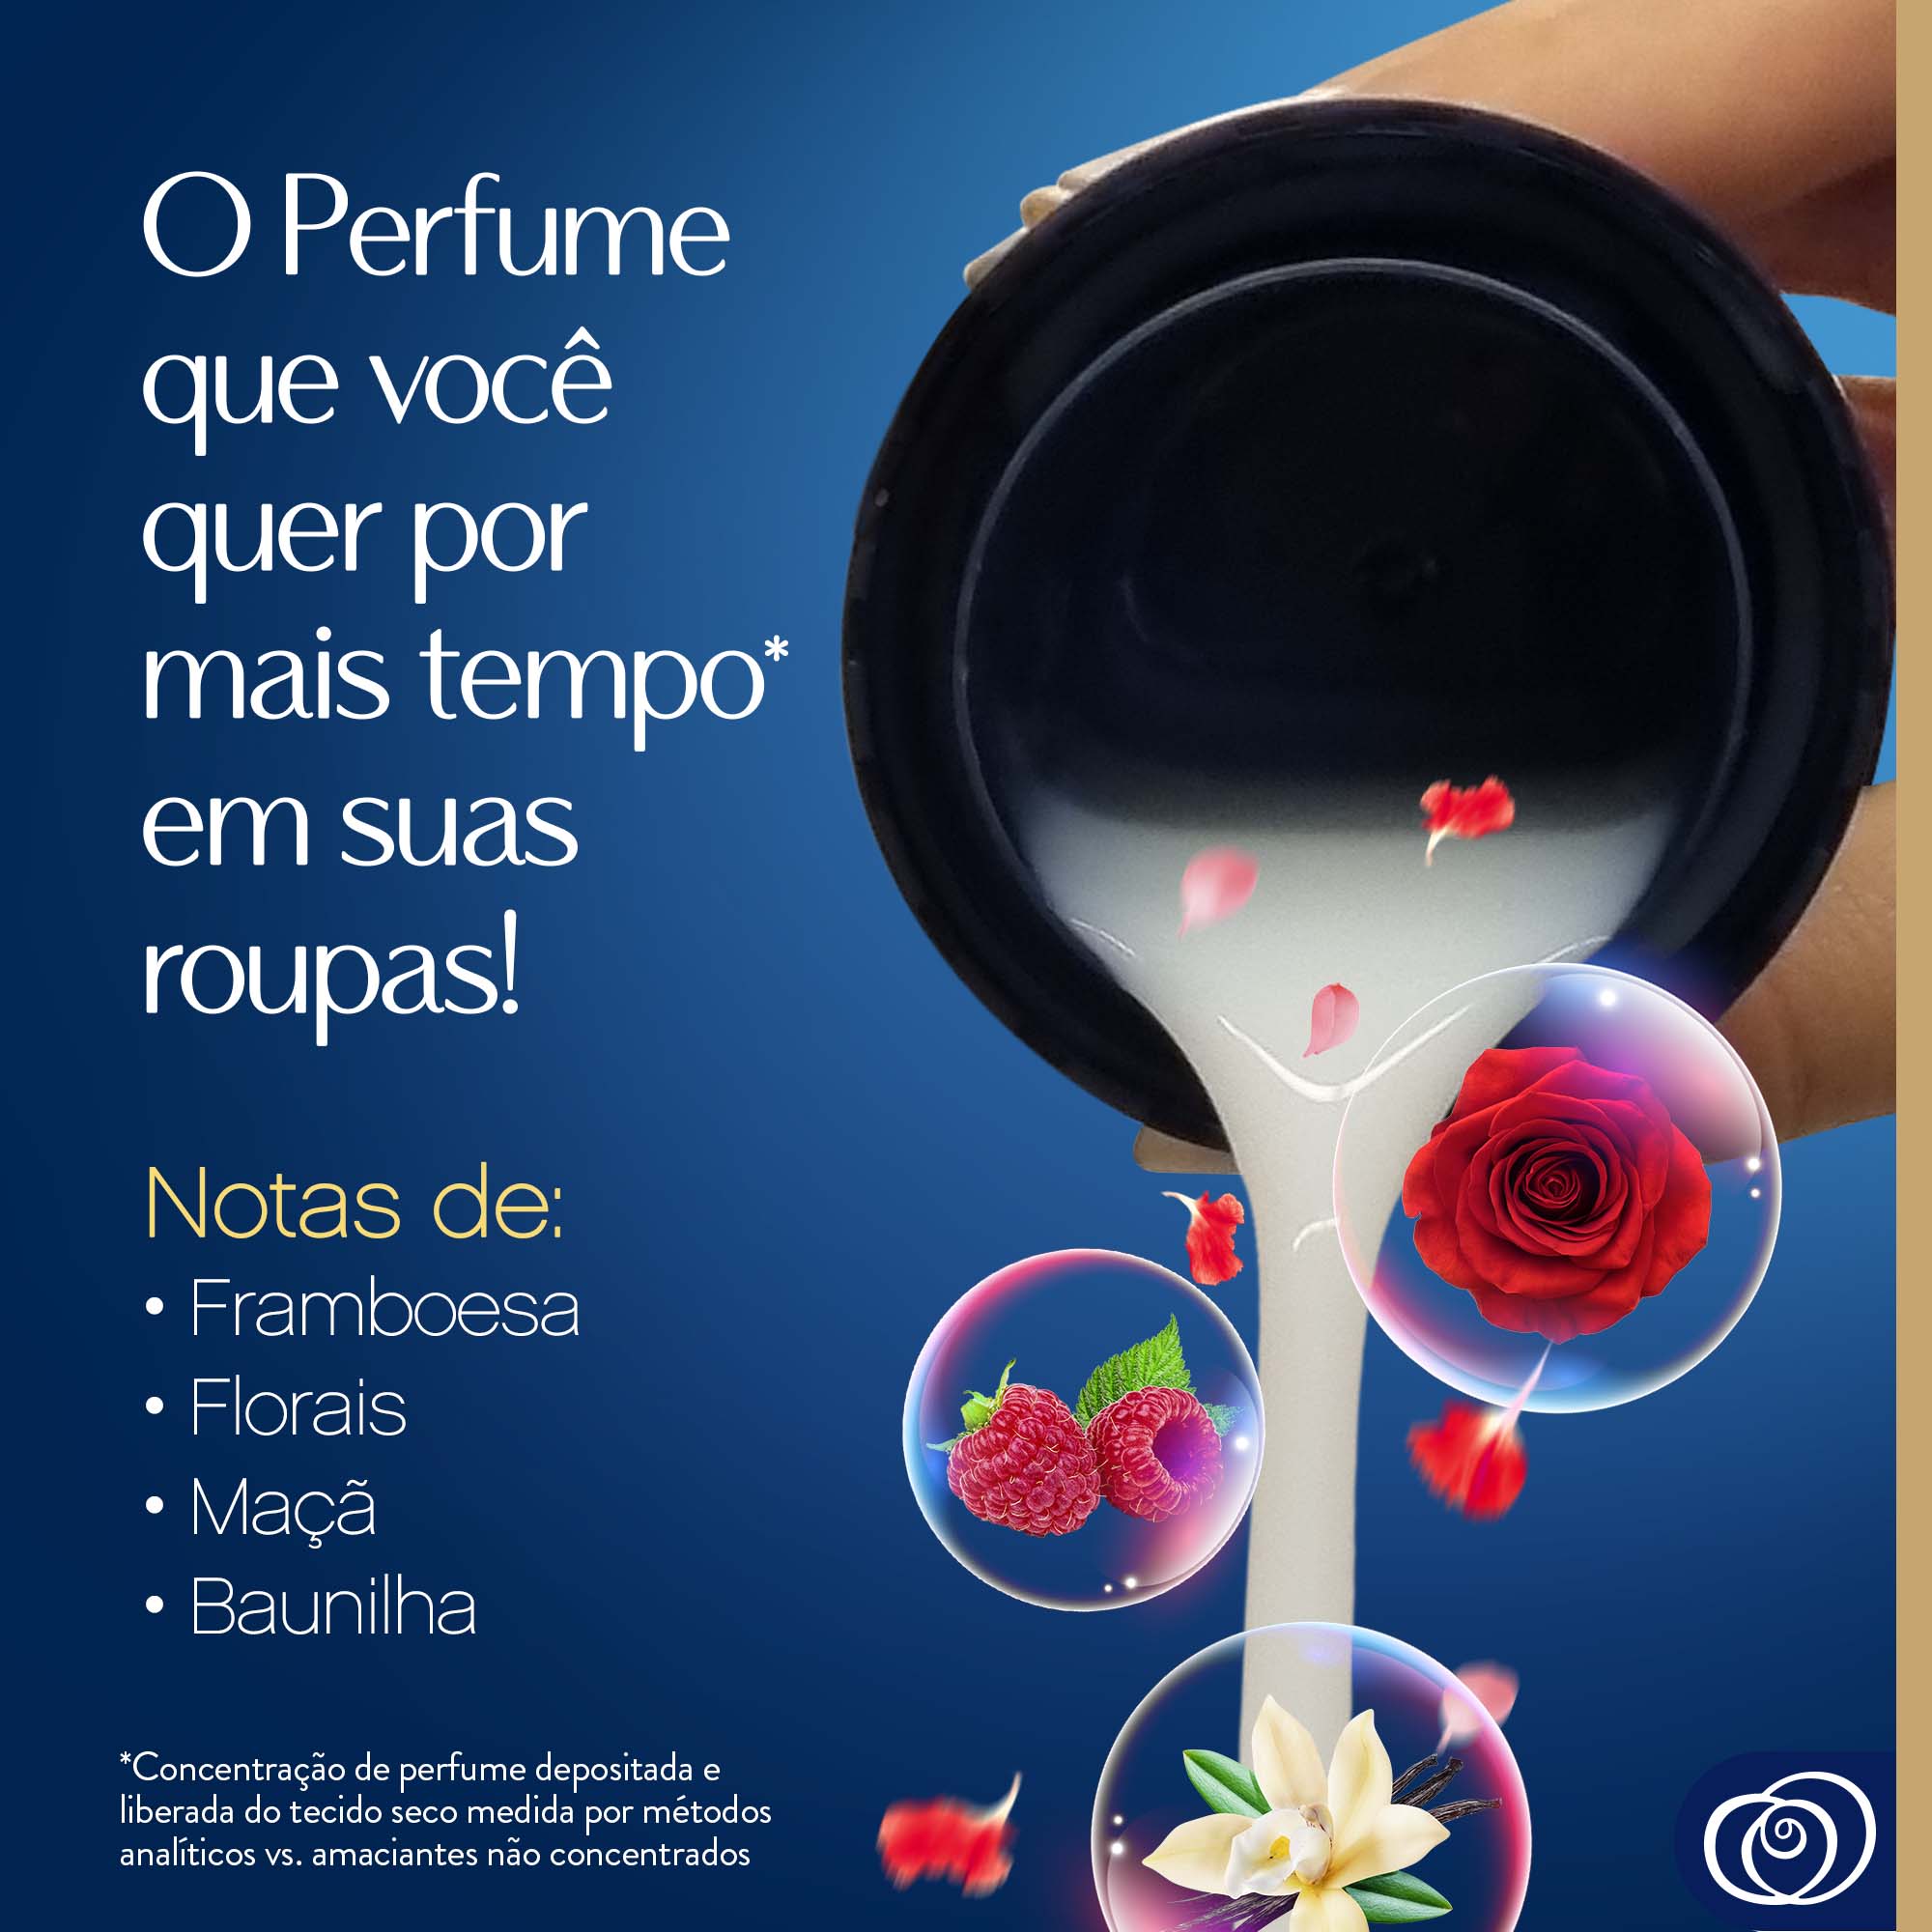 Amaciante Downy Perfume Collection Paixão - O Perfume que voce quer por mais tempo em suas roupas